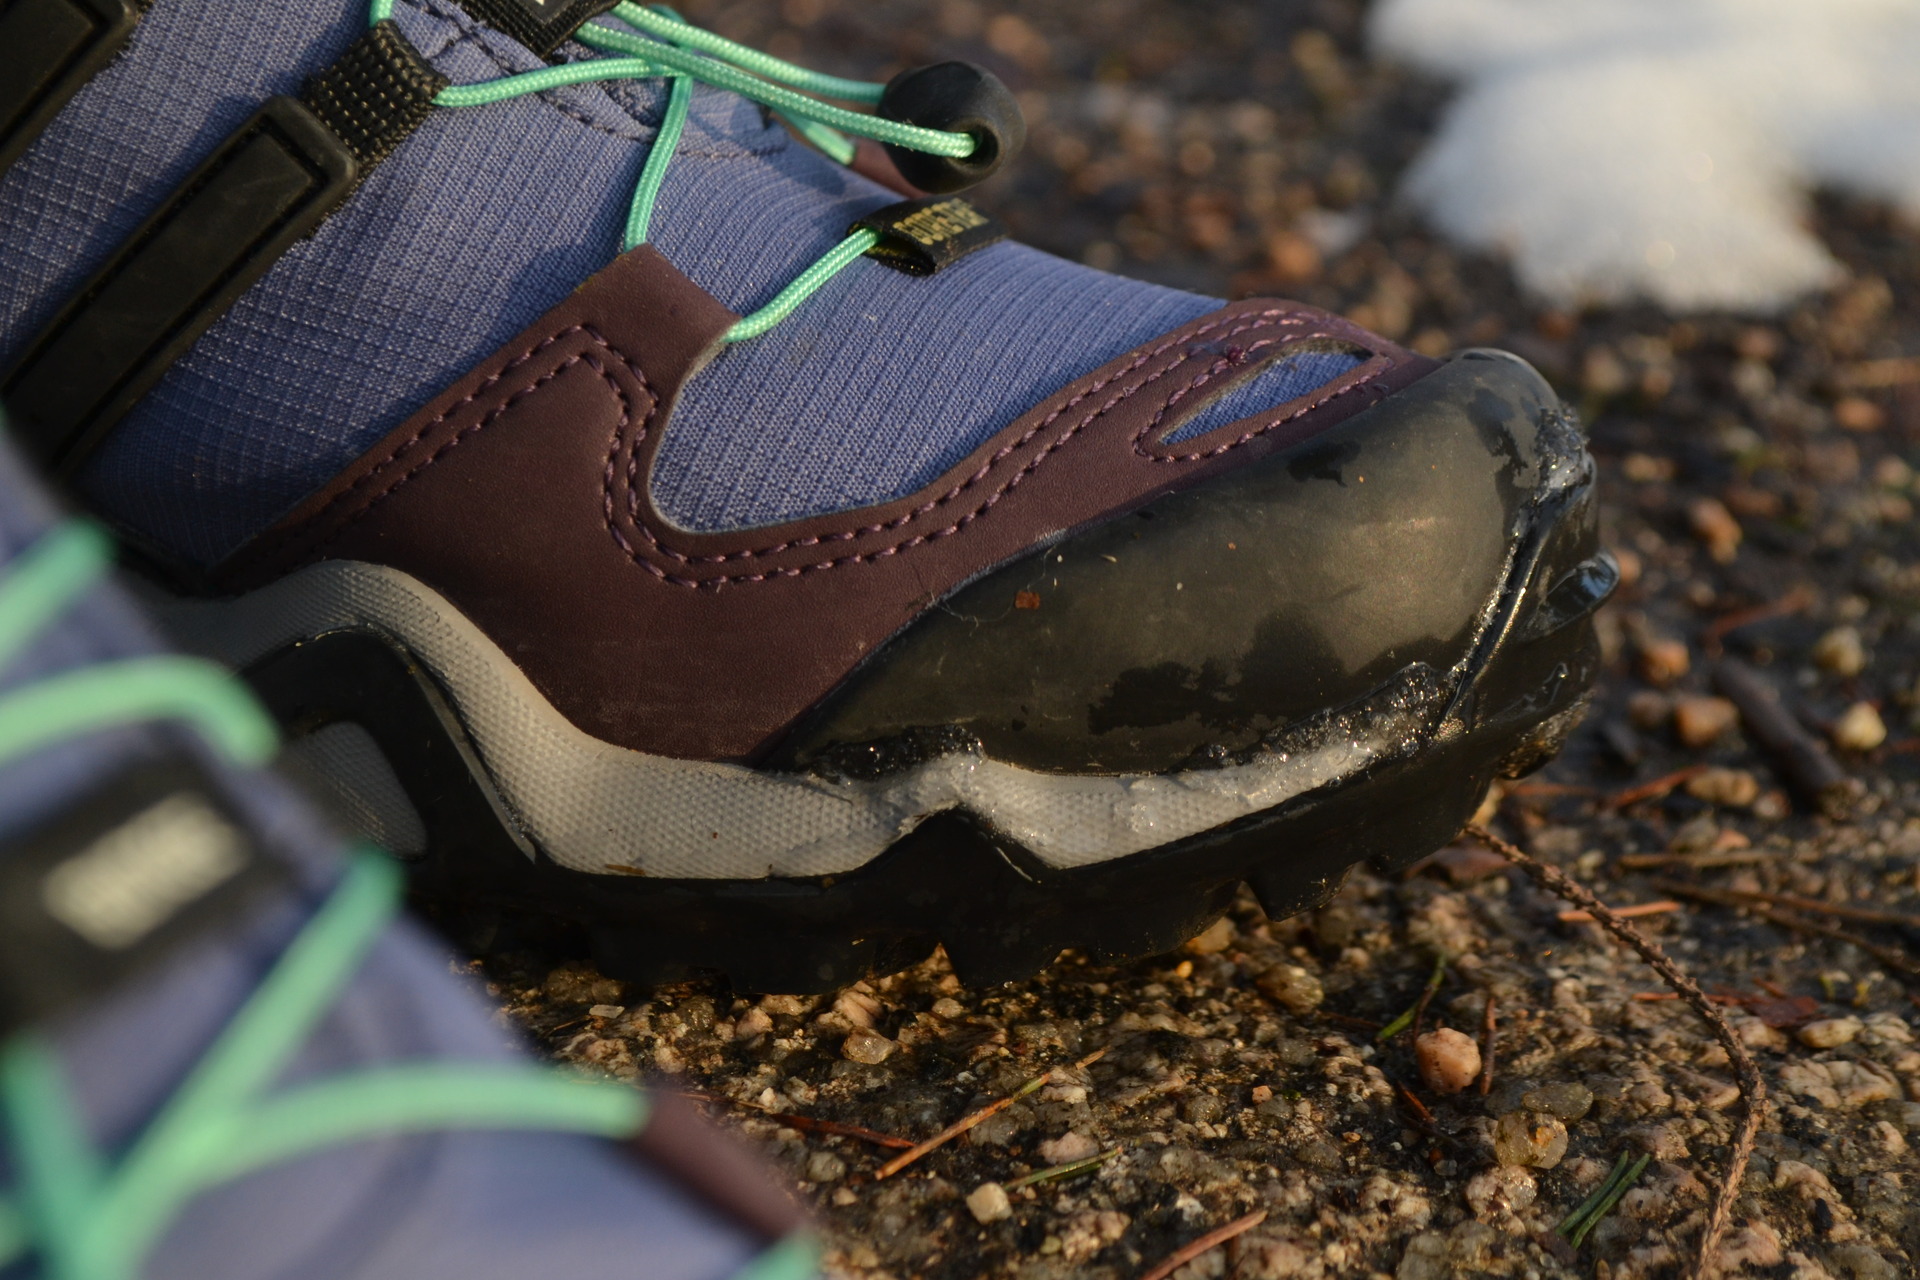 Pogumovaná špička botu chrání proti rychlému opotřebení.